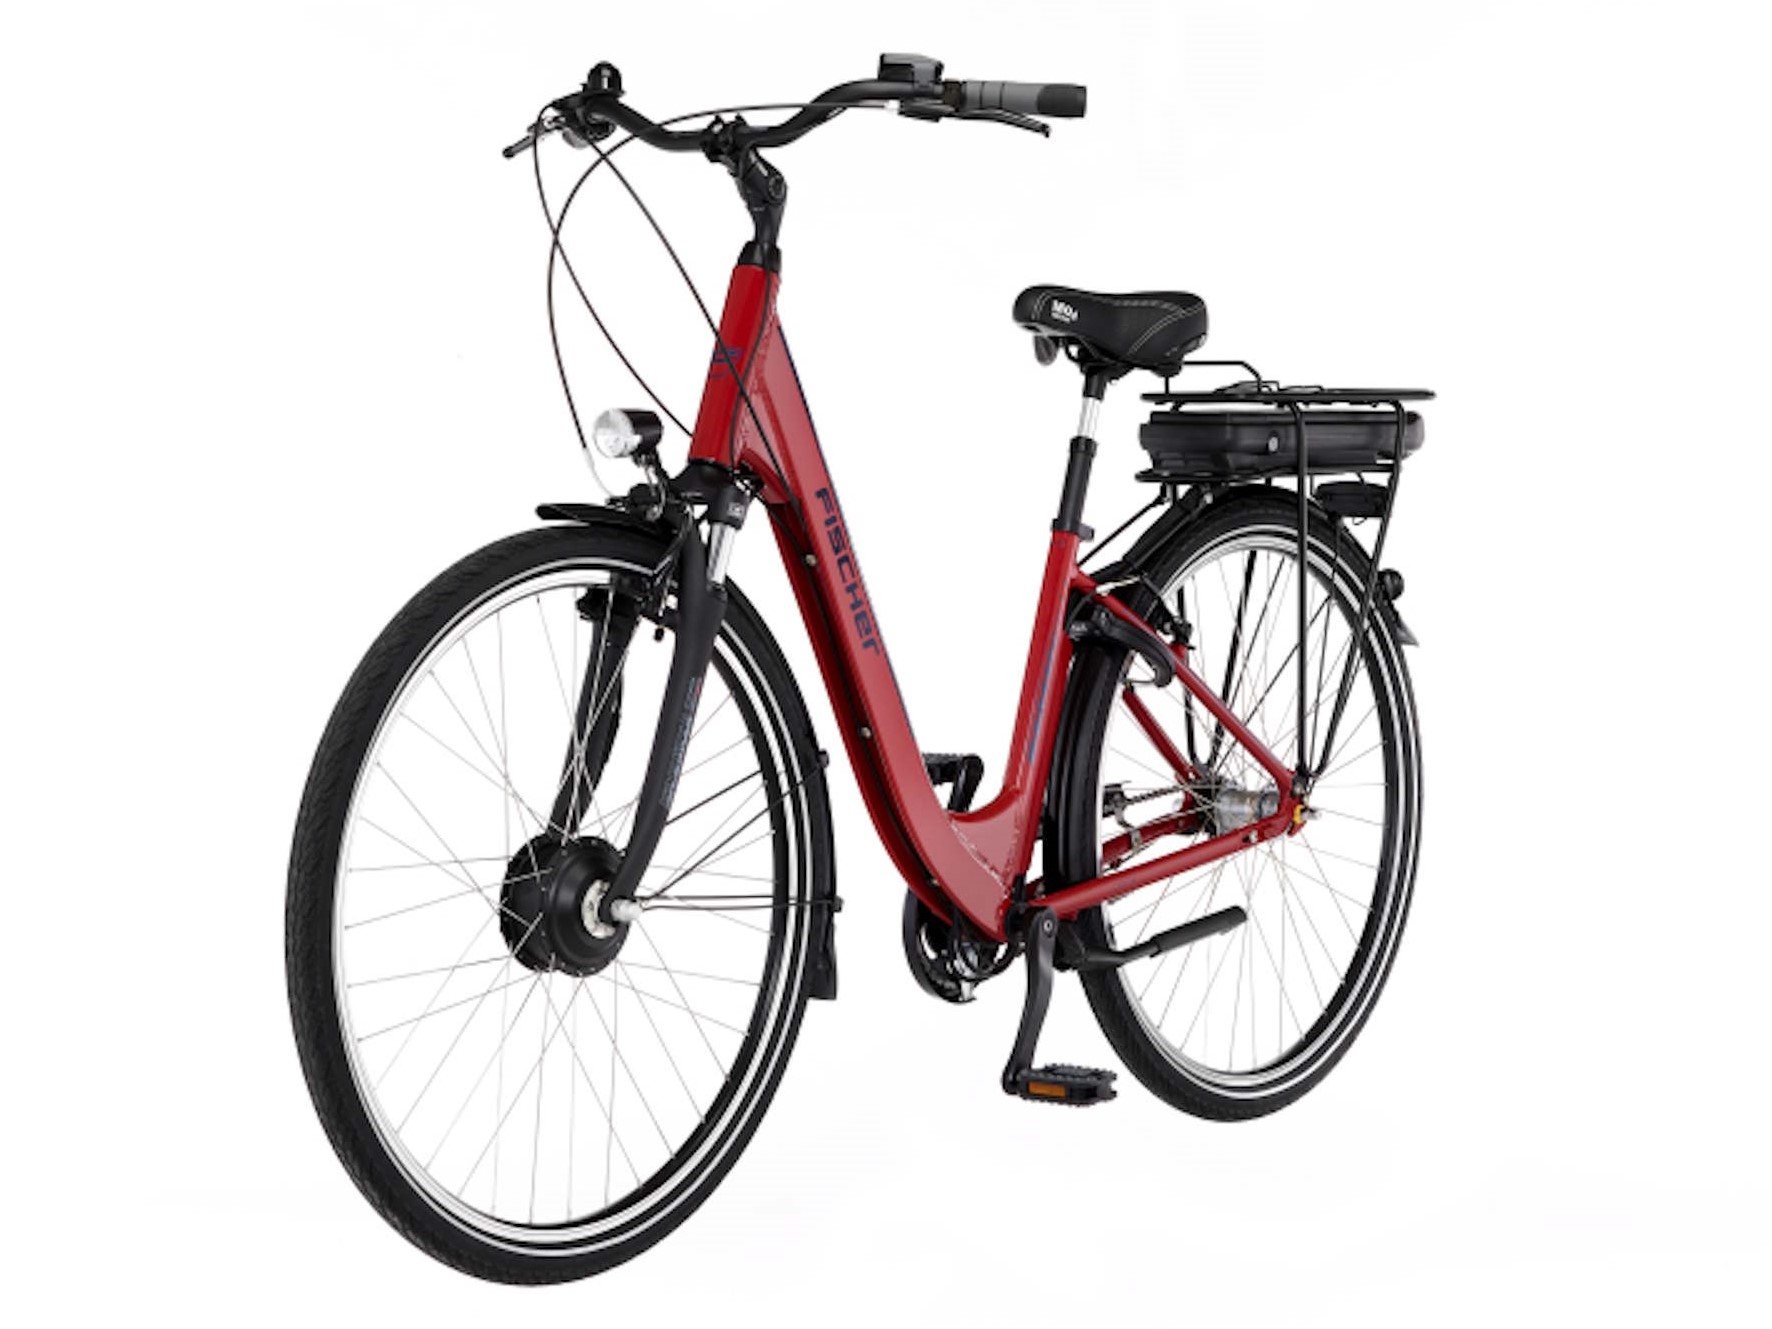 La oferta: esta bicicleta eléctrica de Fisher está disponible actualmente a un precio especialmente bajo